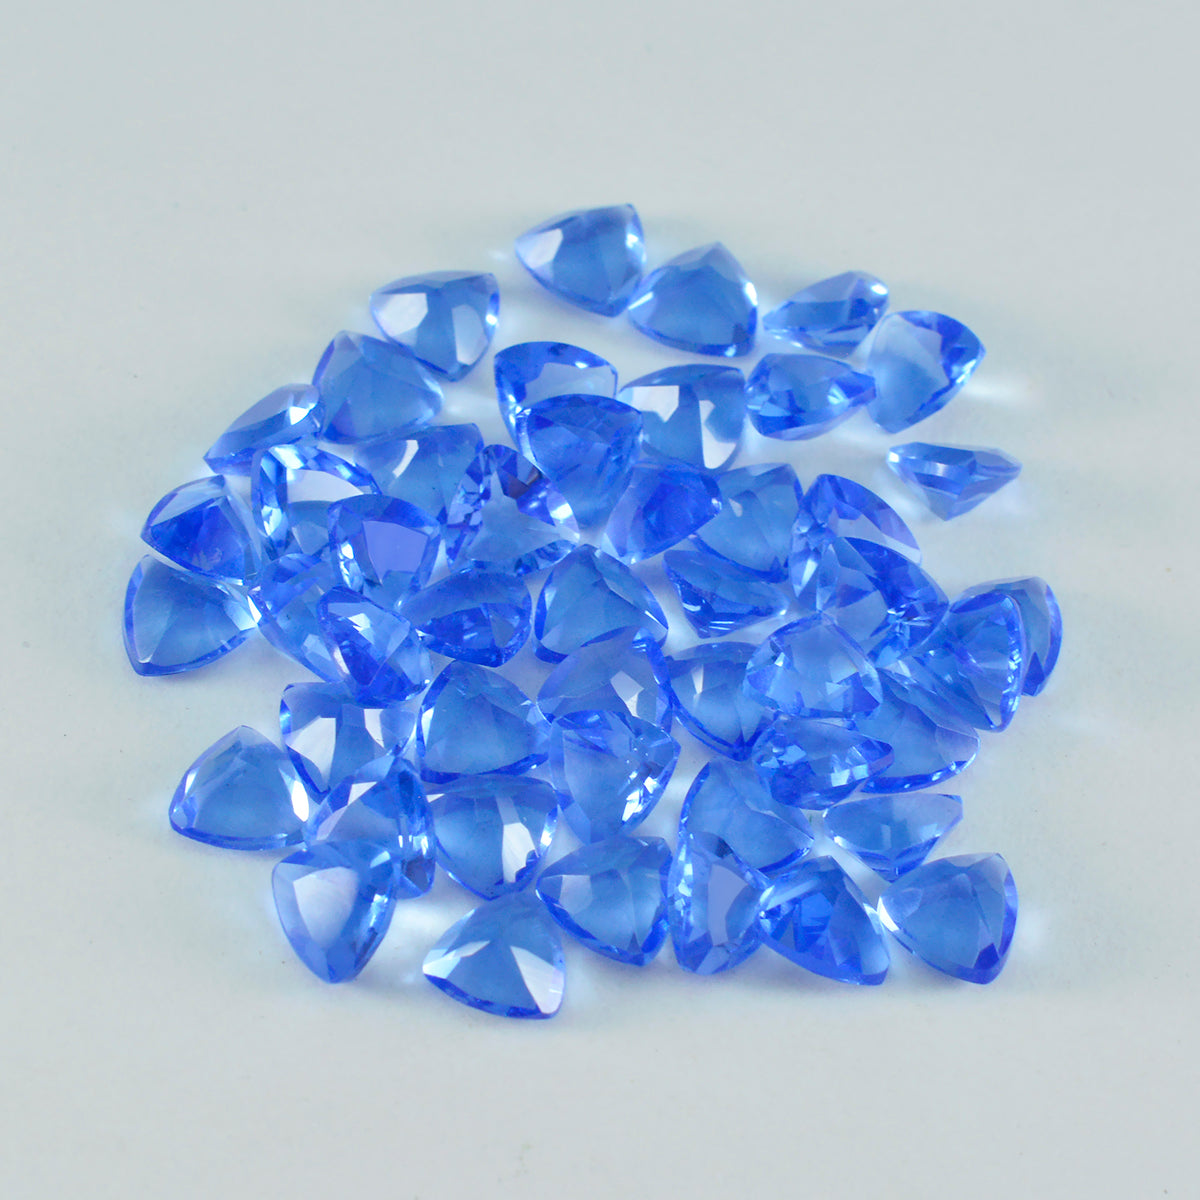 riyogems 1 шт. синий сапфир cz ограненный 6x6 мм форма триллиона фантастическое качество россыпь драгоценных камней